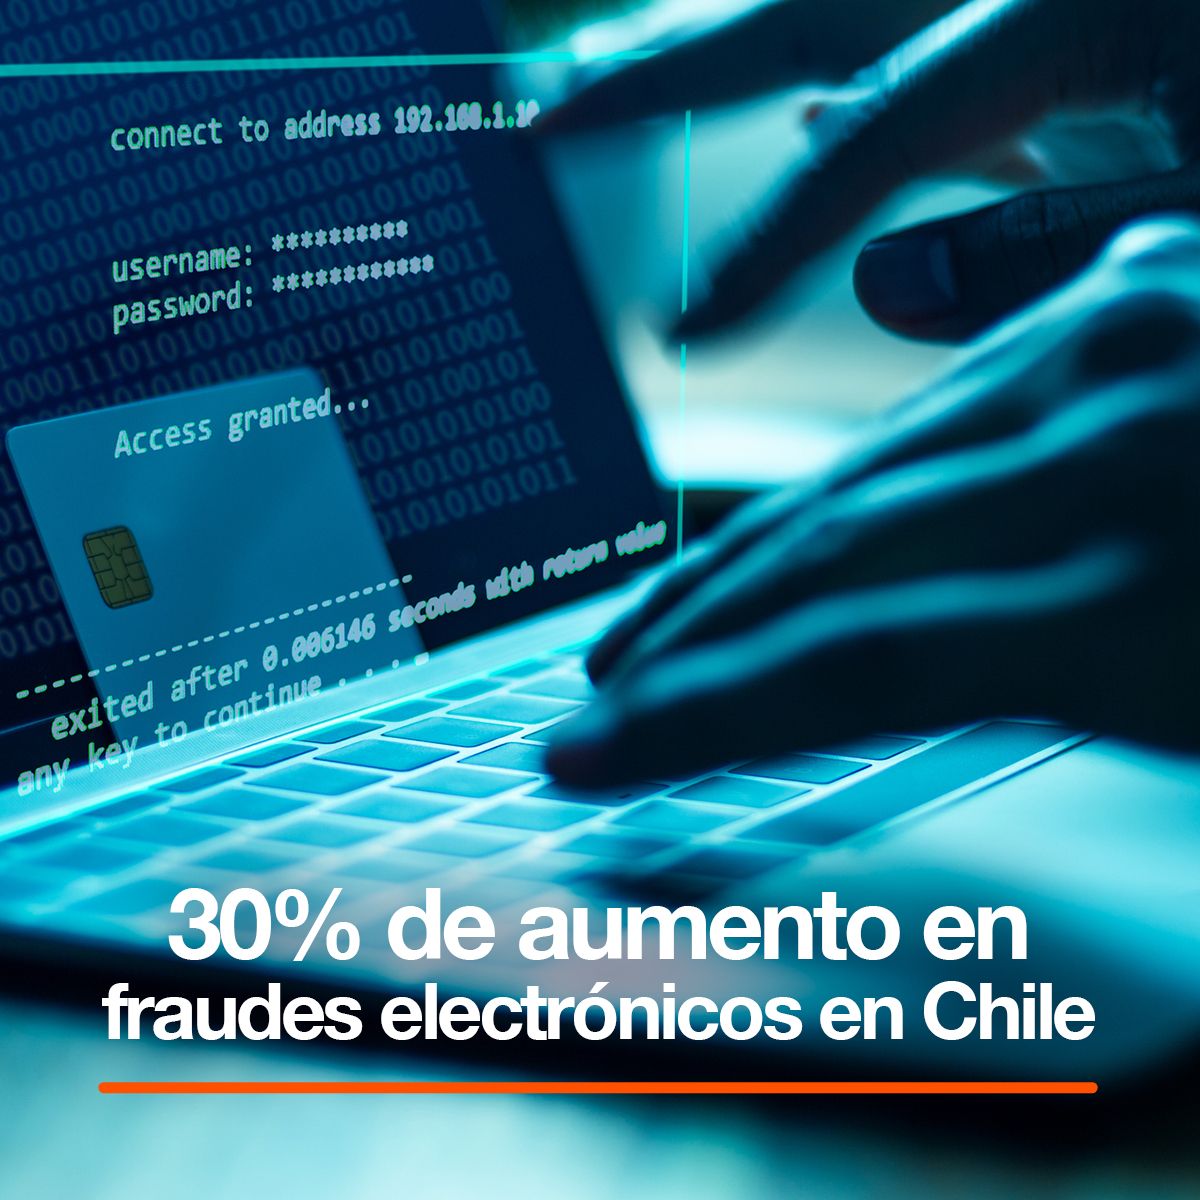 30% de aumento en fraudes electrónicos en Chile